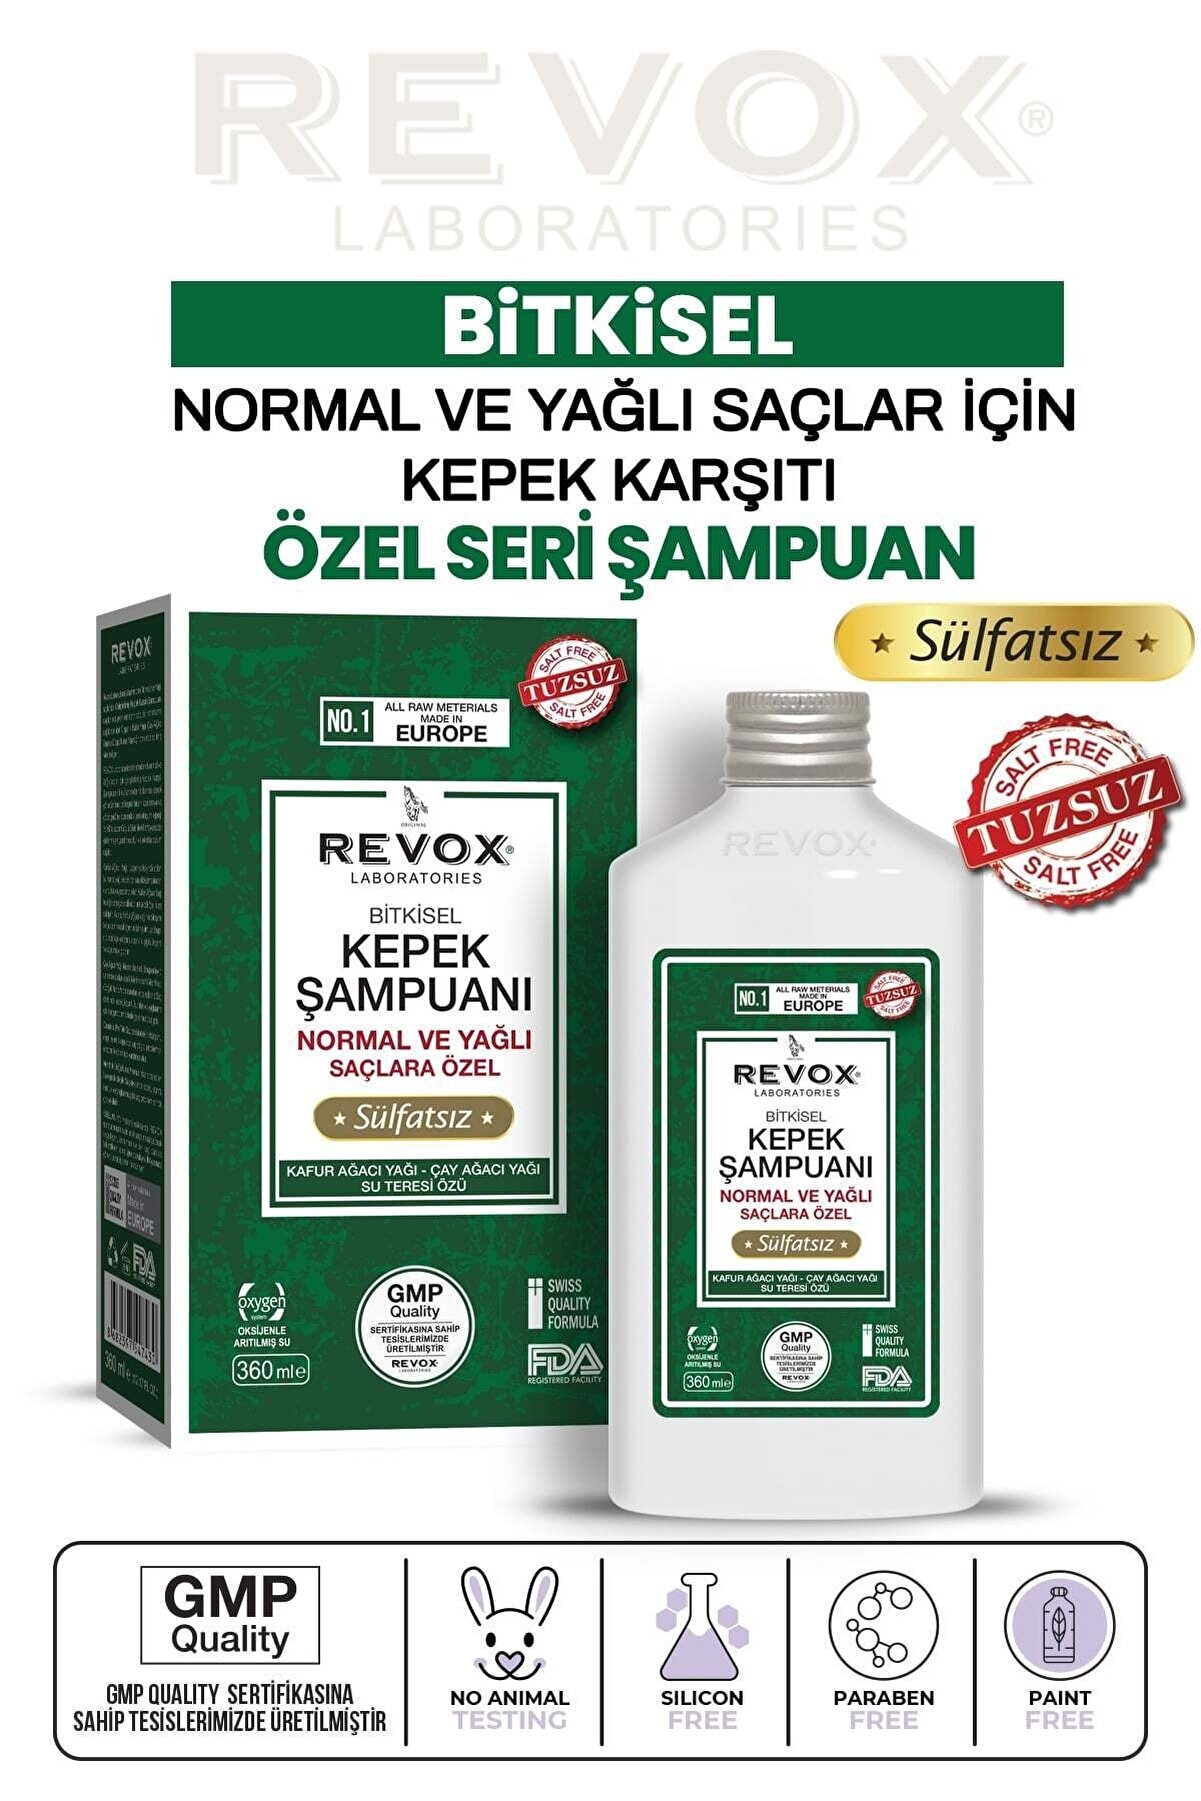 Revox Bitkisel Kepek Karşıtı & Önleyici Şampuan / Tuzsuz, Sülfatsız -normal Ve Yağlı Saçlar Için